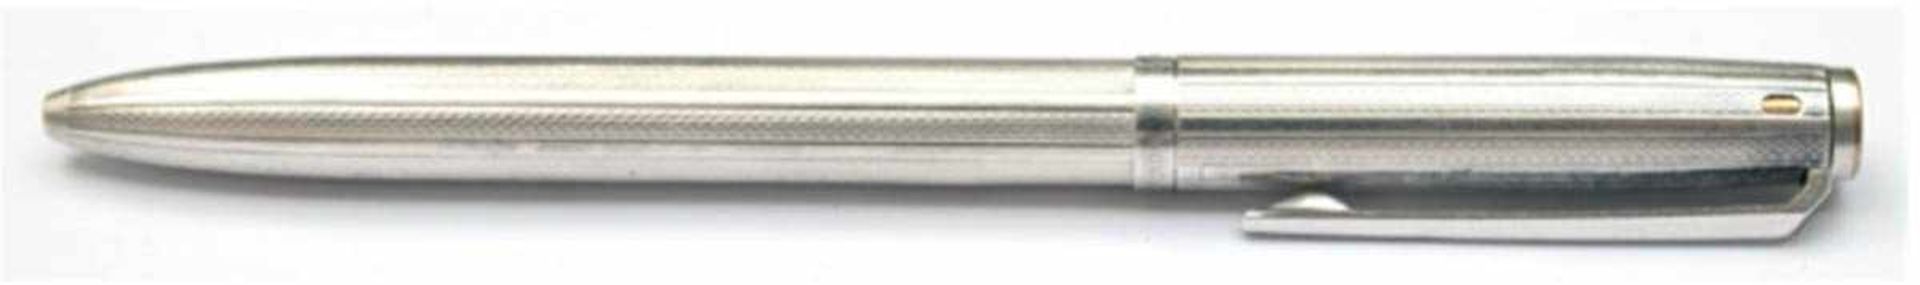 Montblanc-Kugelschreiber PIX-O-MAT, 925er Silber, mit 4 Minen, reliefierte Oberfläche,